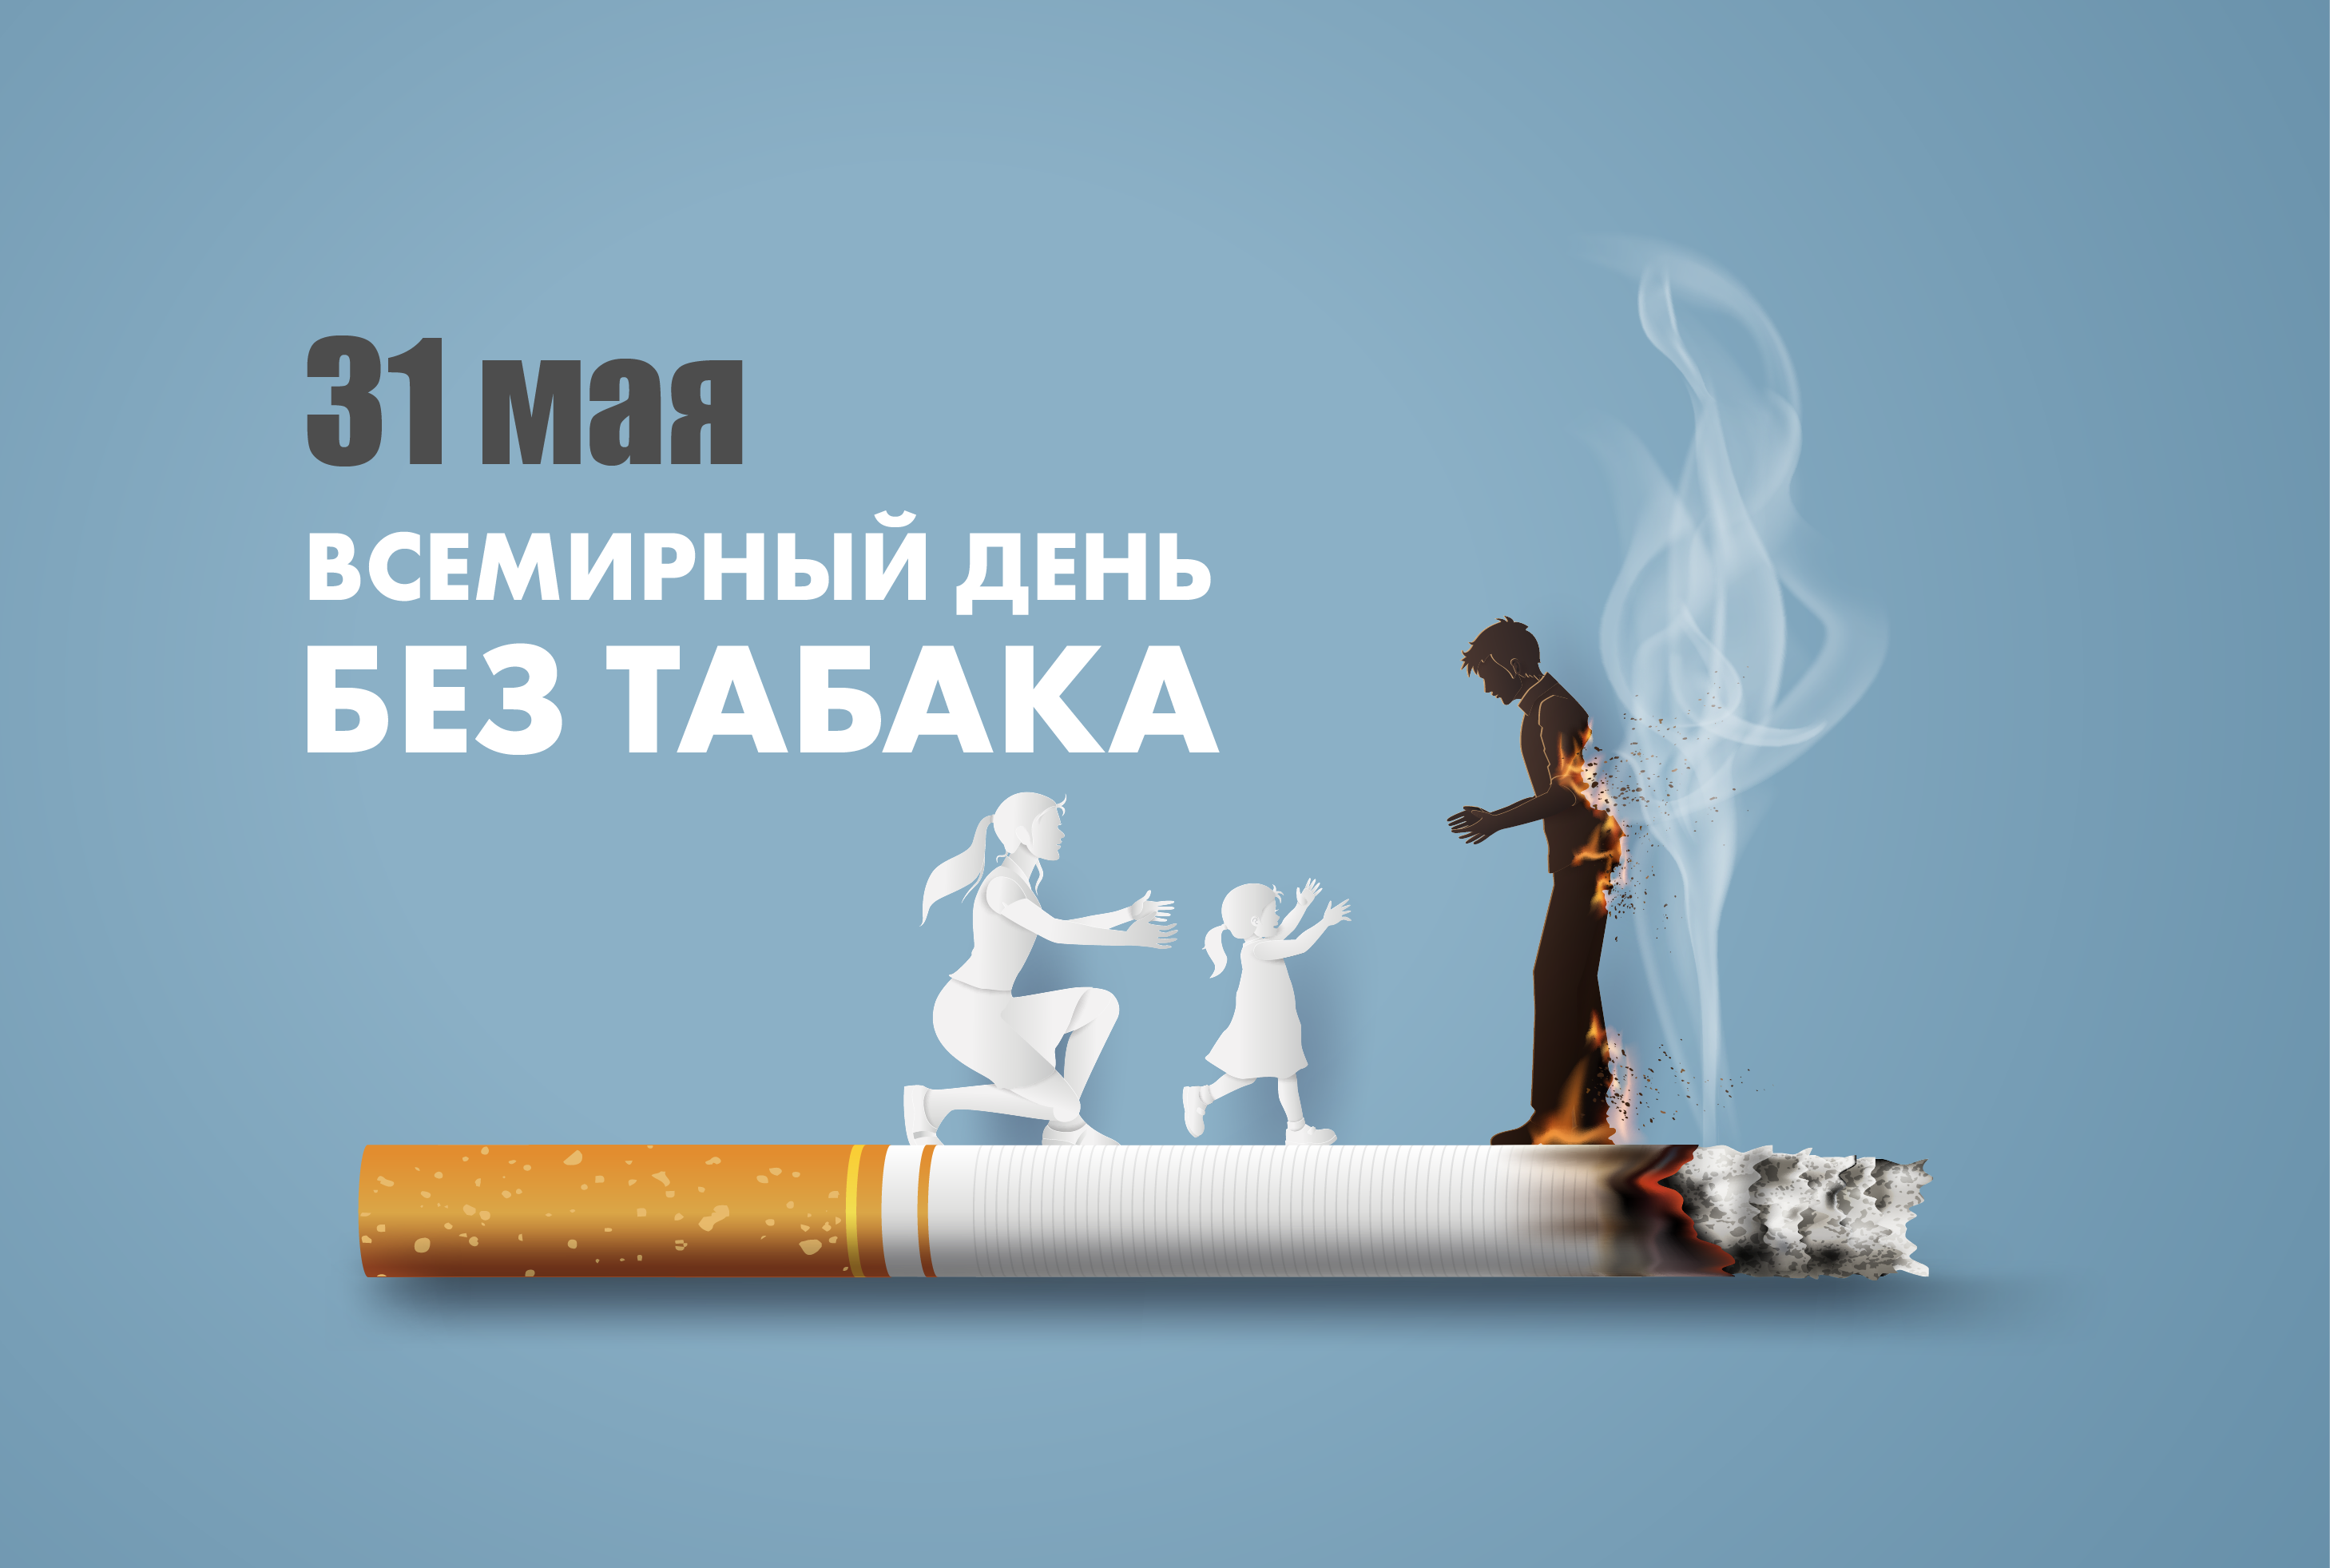 31 Мая табака Всемирный день. Всемирный день день без табака. 31 Всемирный день без табака. Акция Всемирный день без табака. Изменения с 31 мая